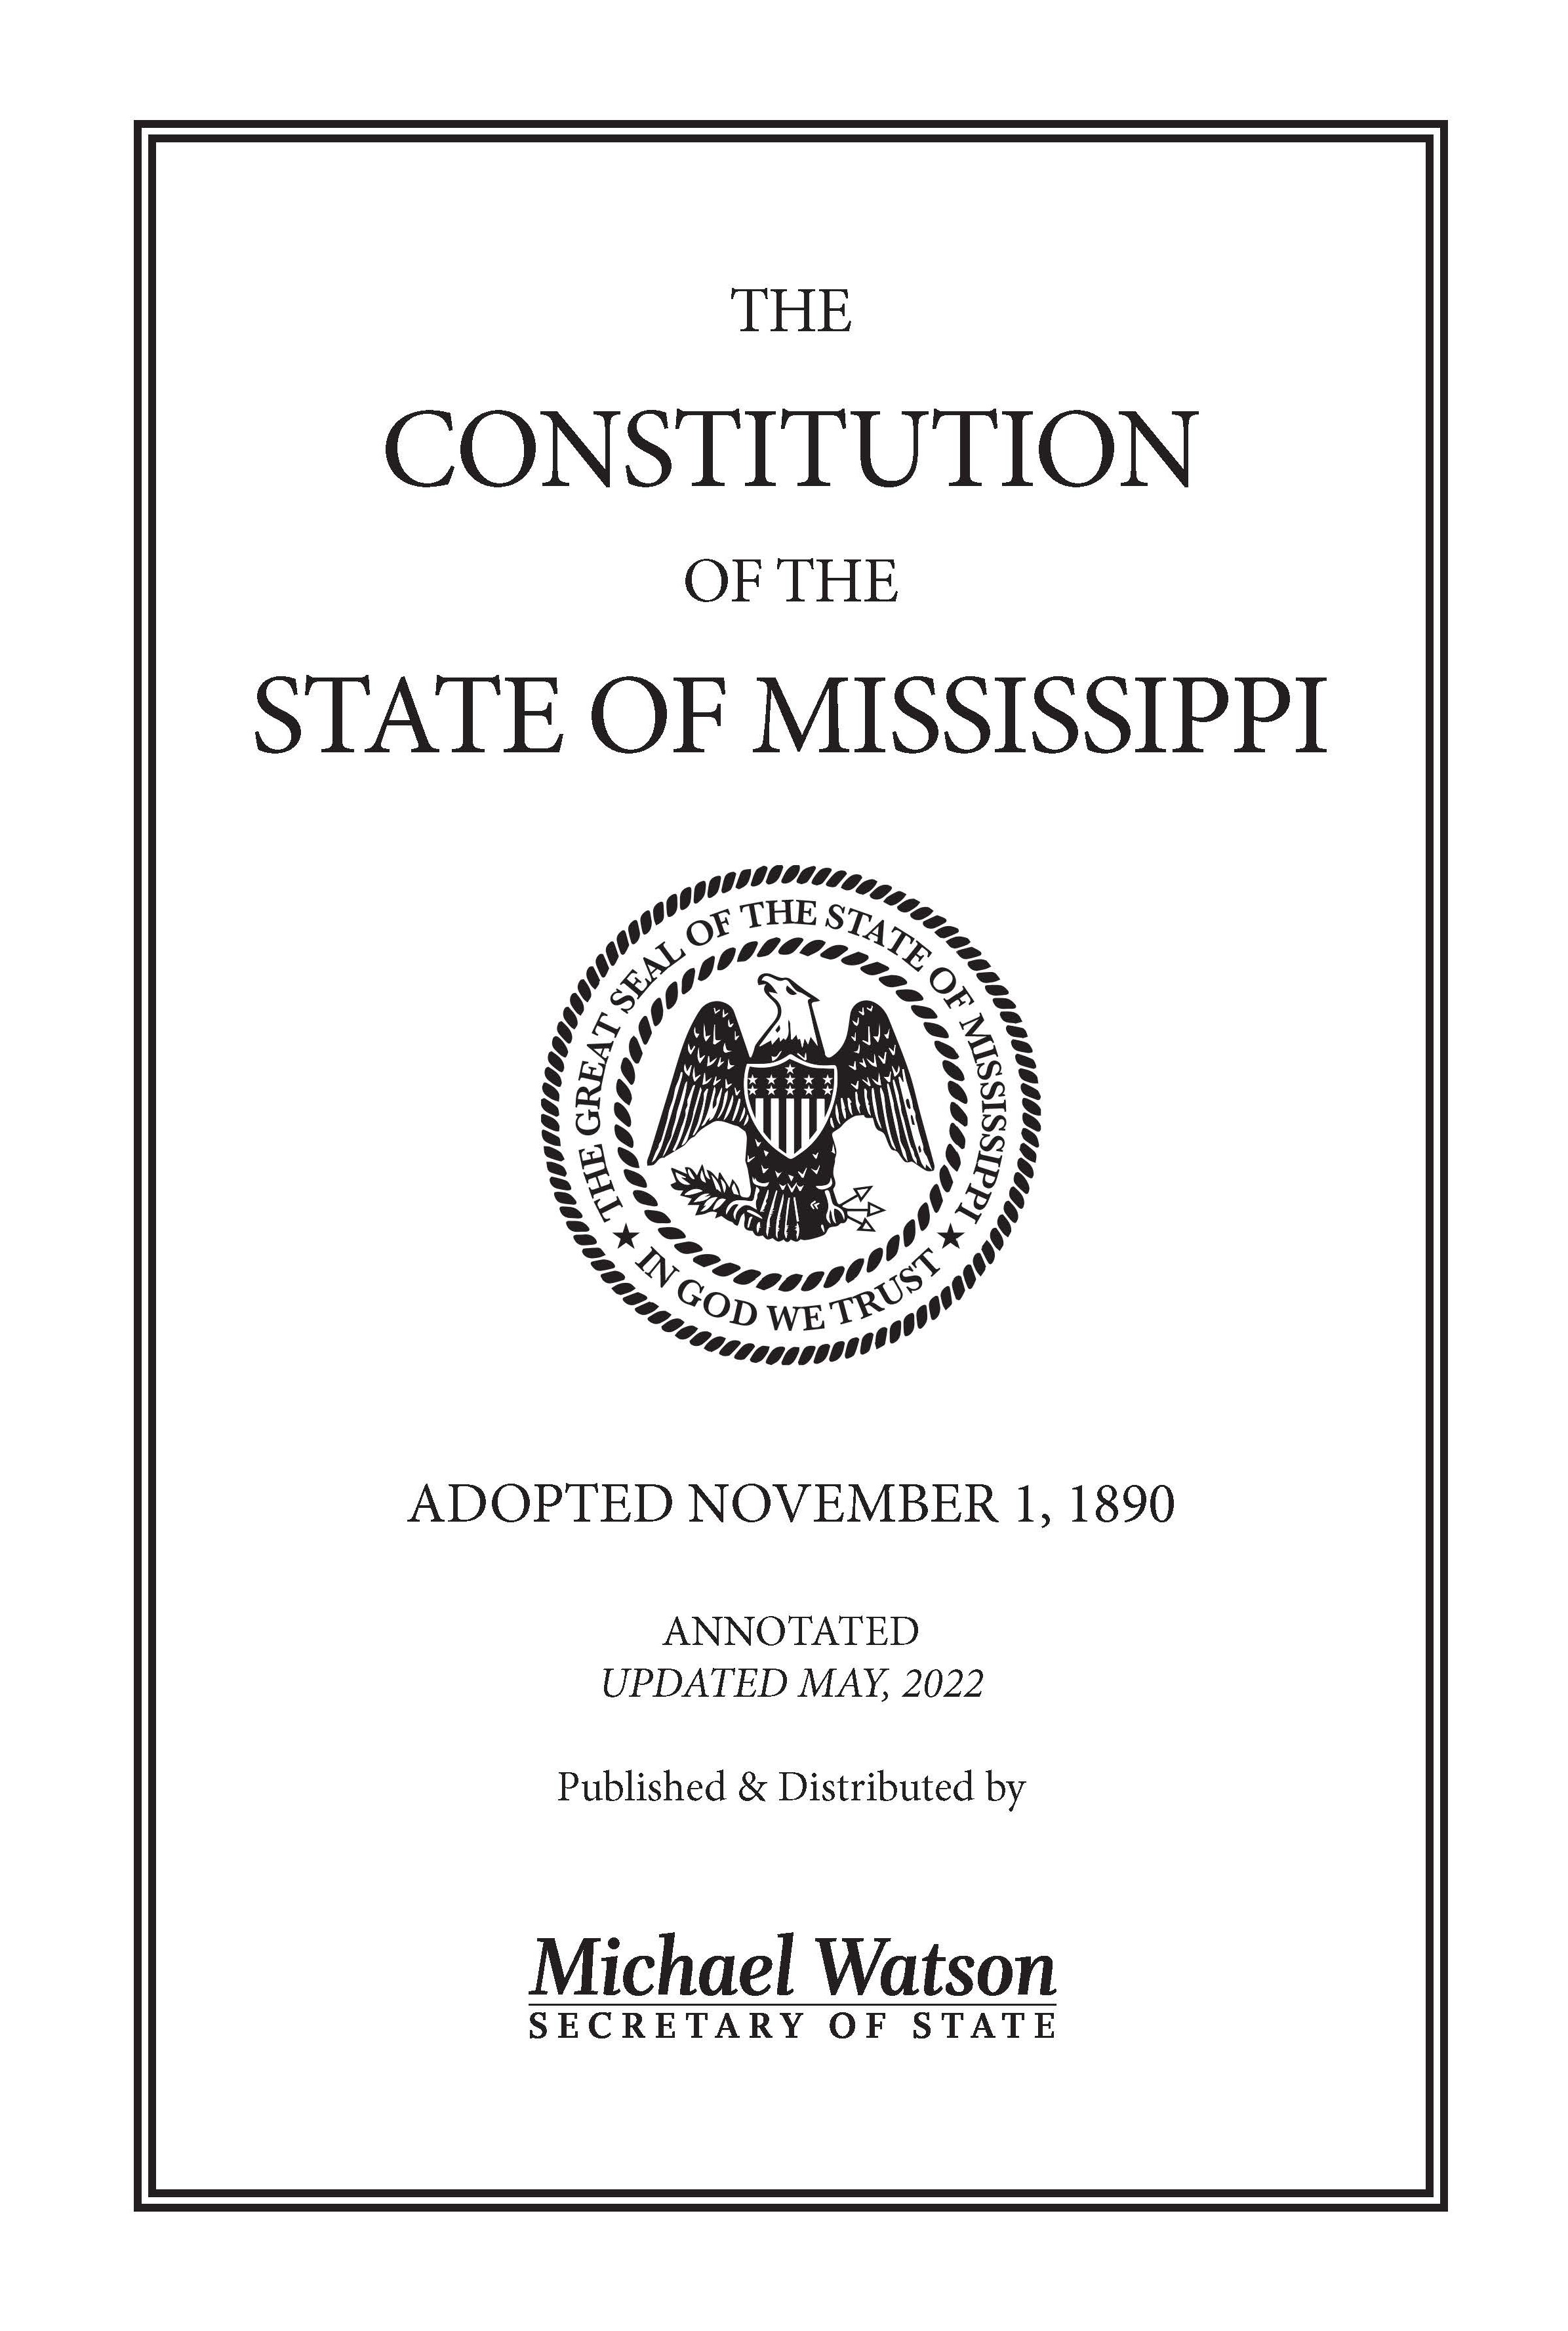 Mississippi Constitution